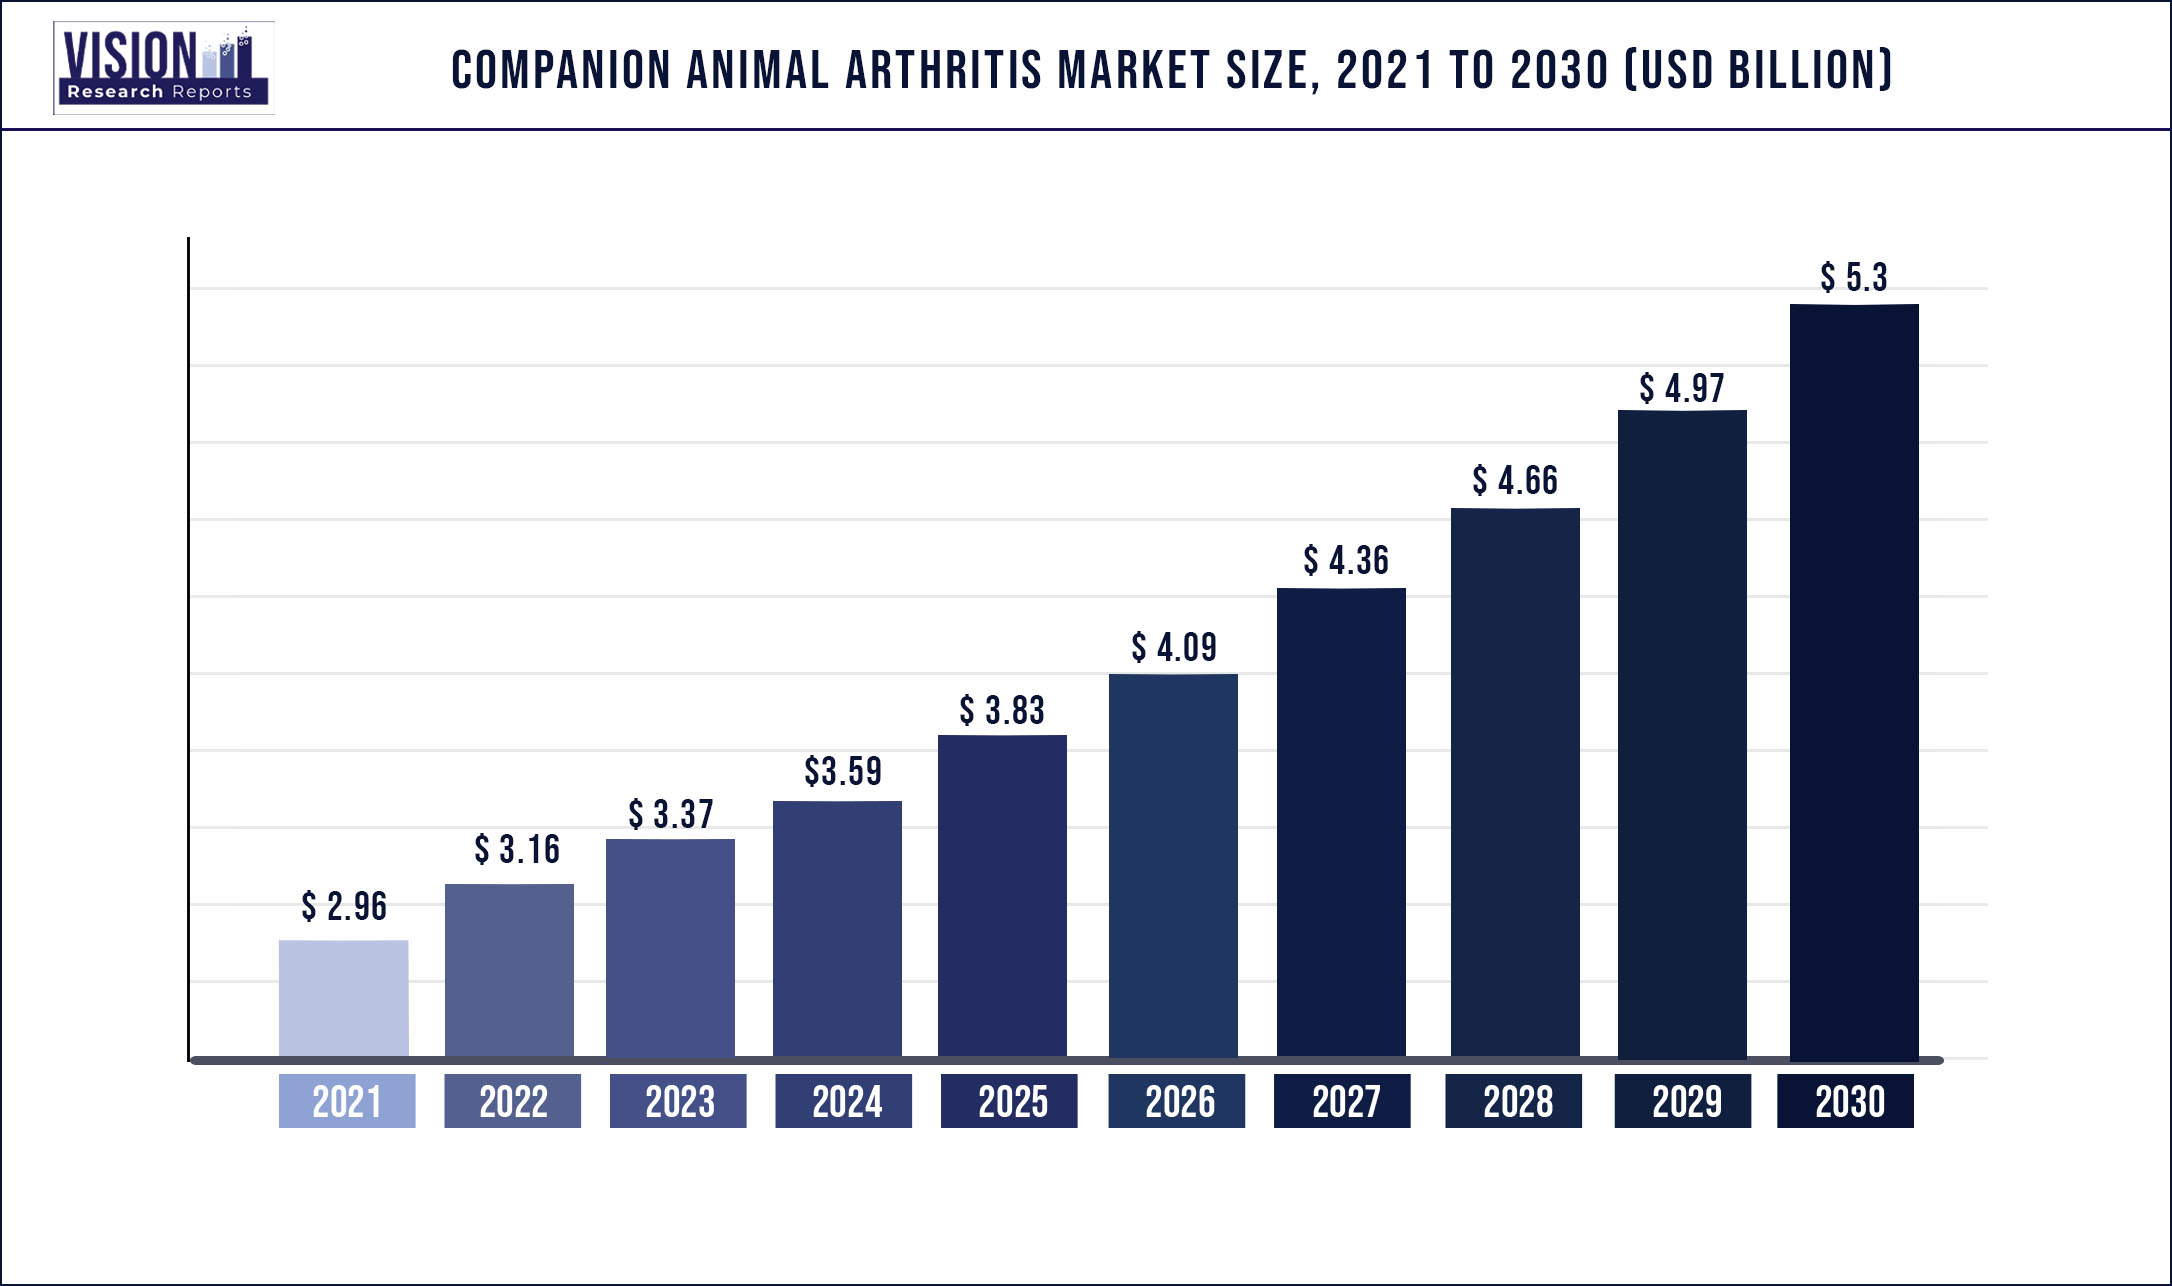 Companion Animal Arthritis Market Size 2021 to 2030